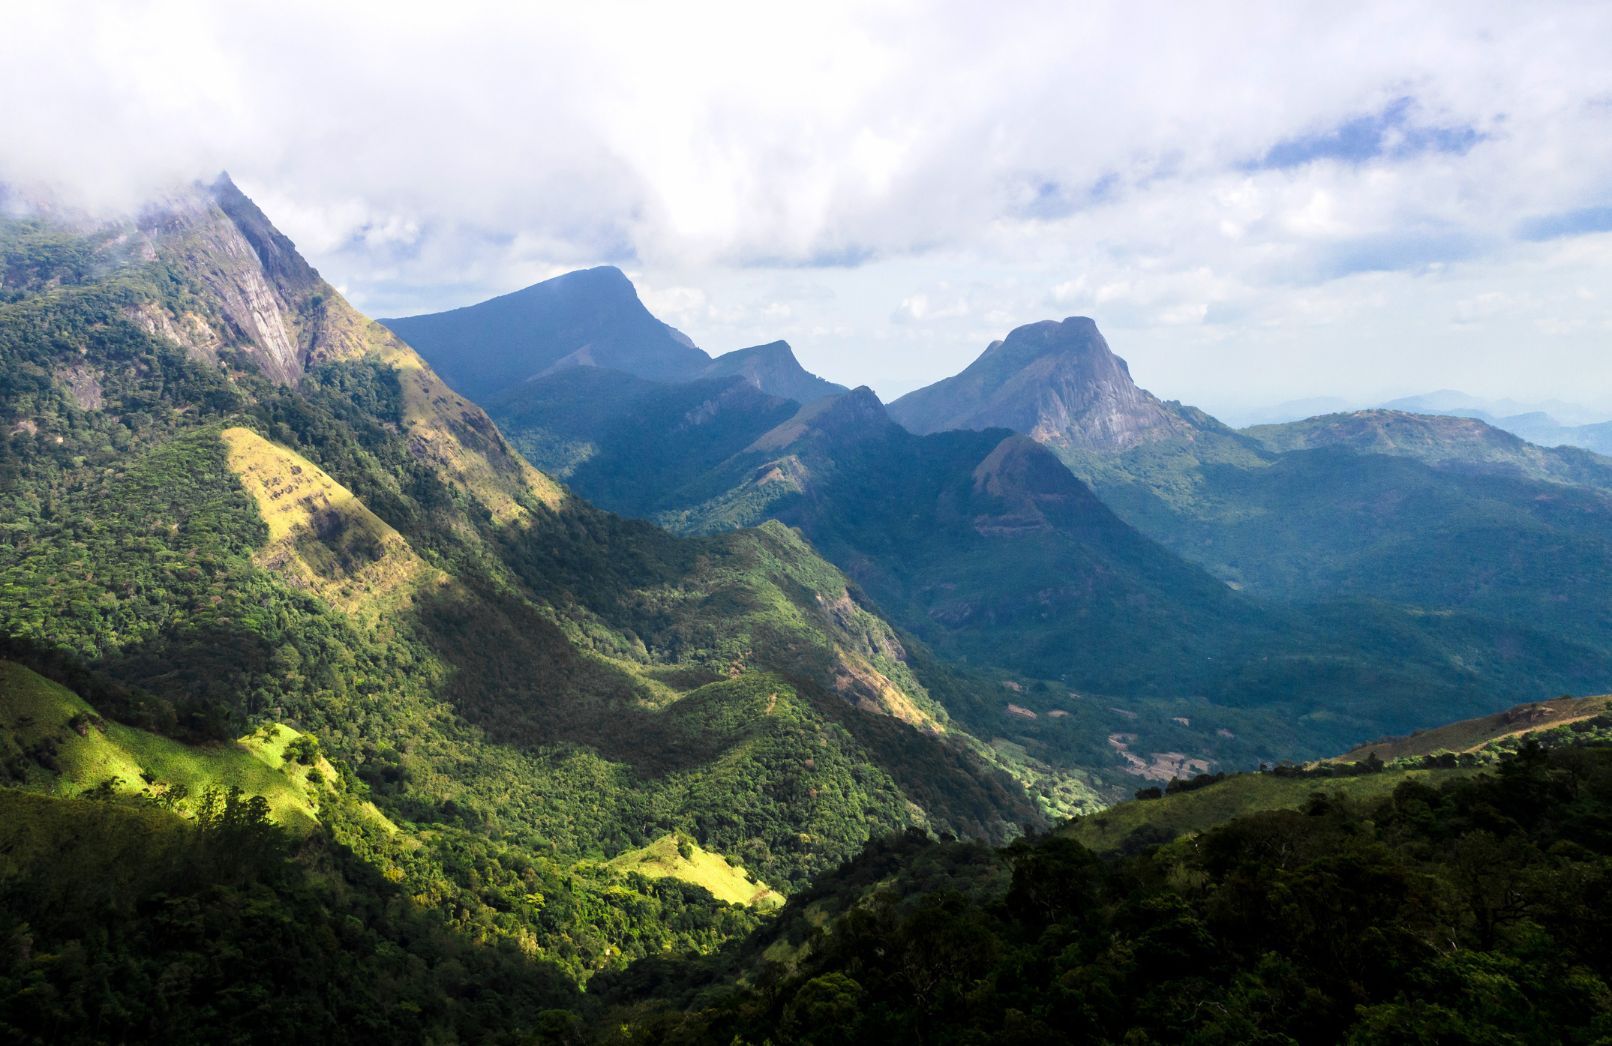 The Knuckles Range in Sri Lanka